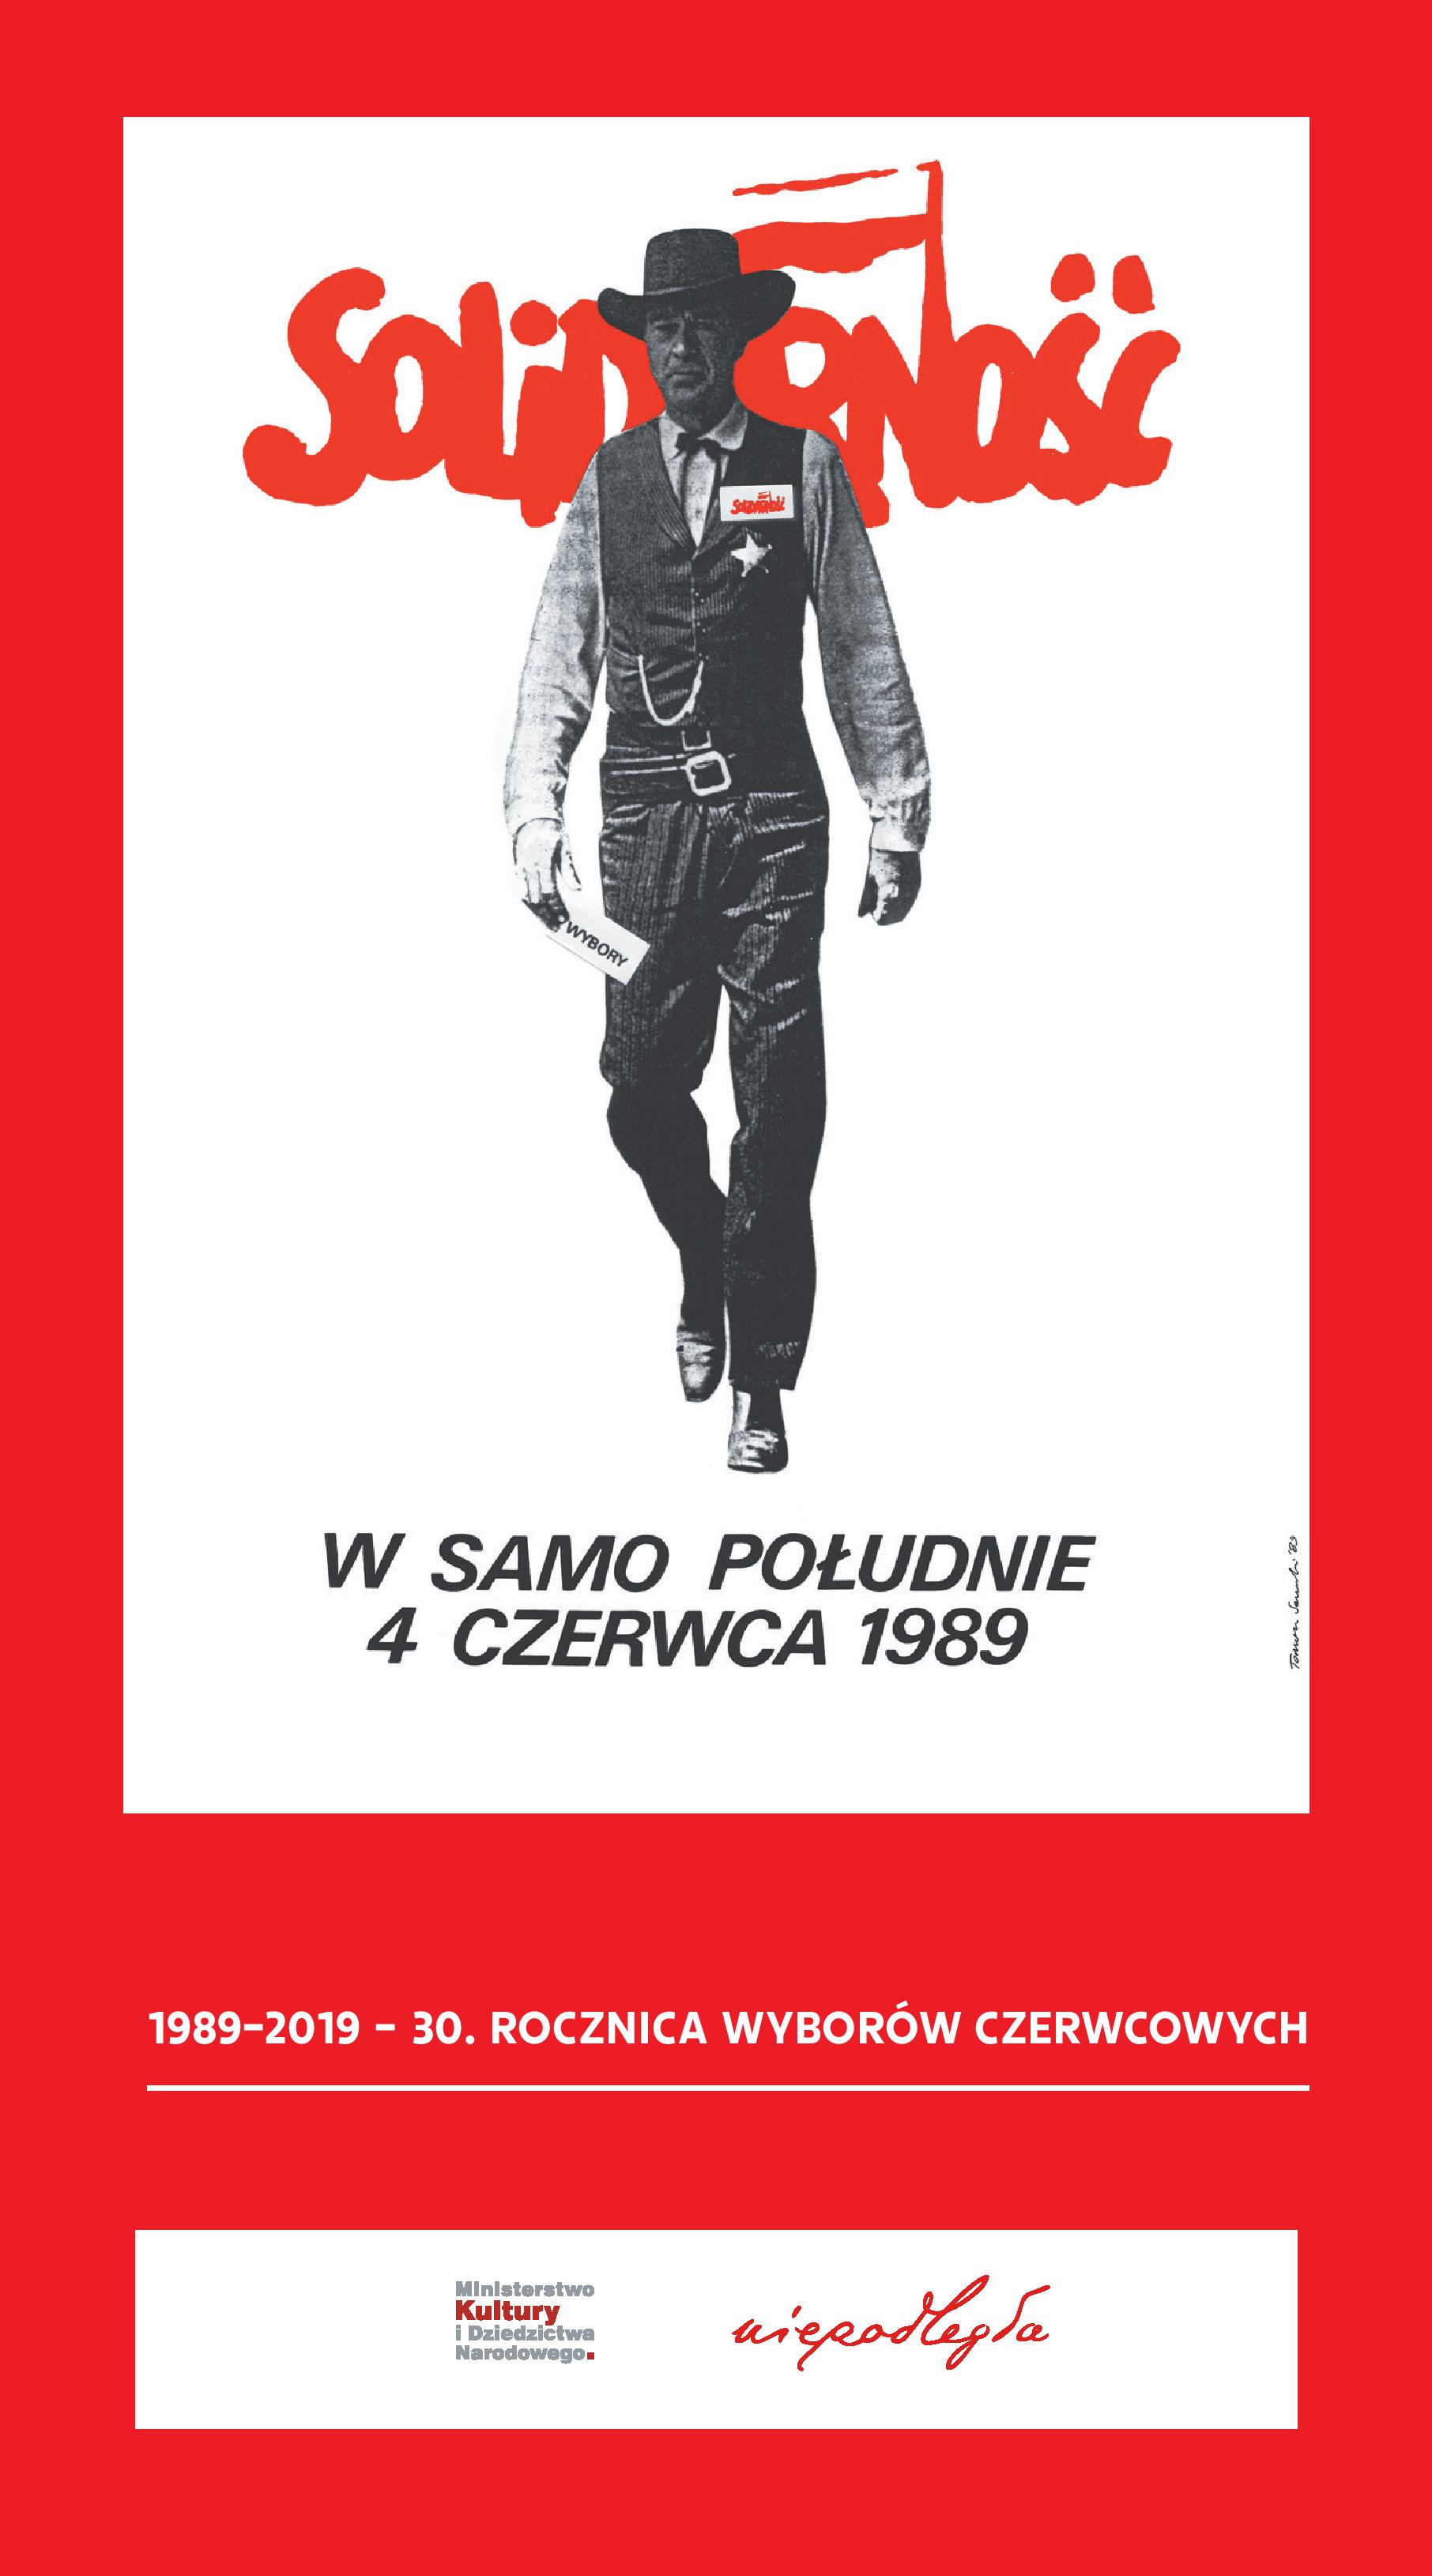 plakat "W samo południe 4 czerwca 1989" z rewolwerowcem "Solidarności"